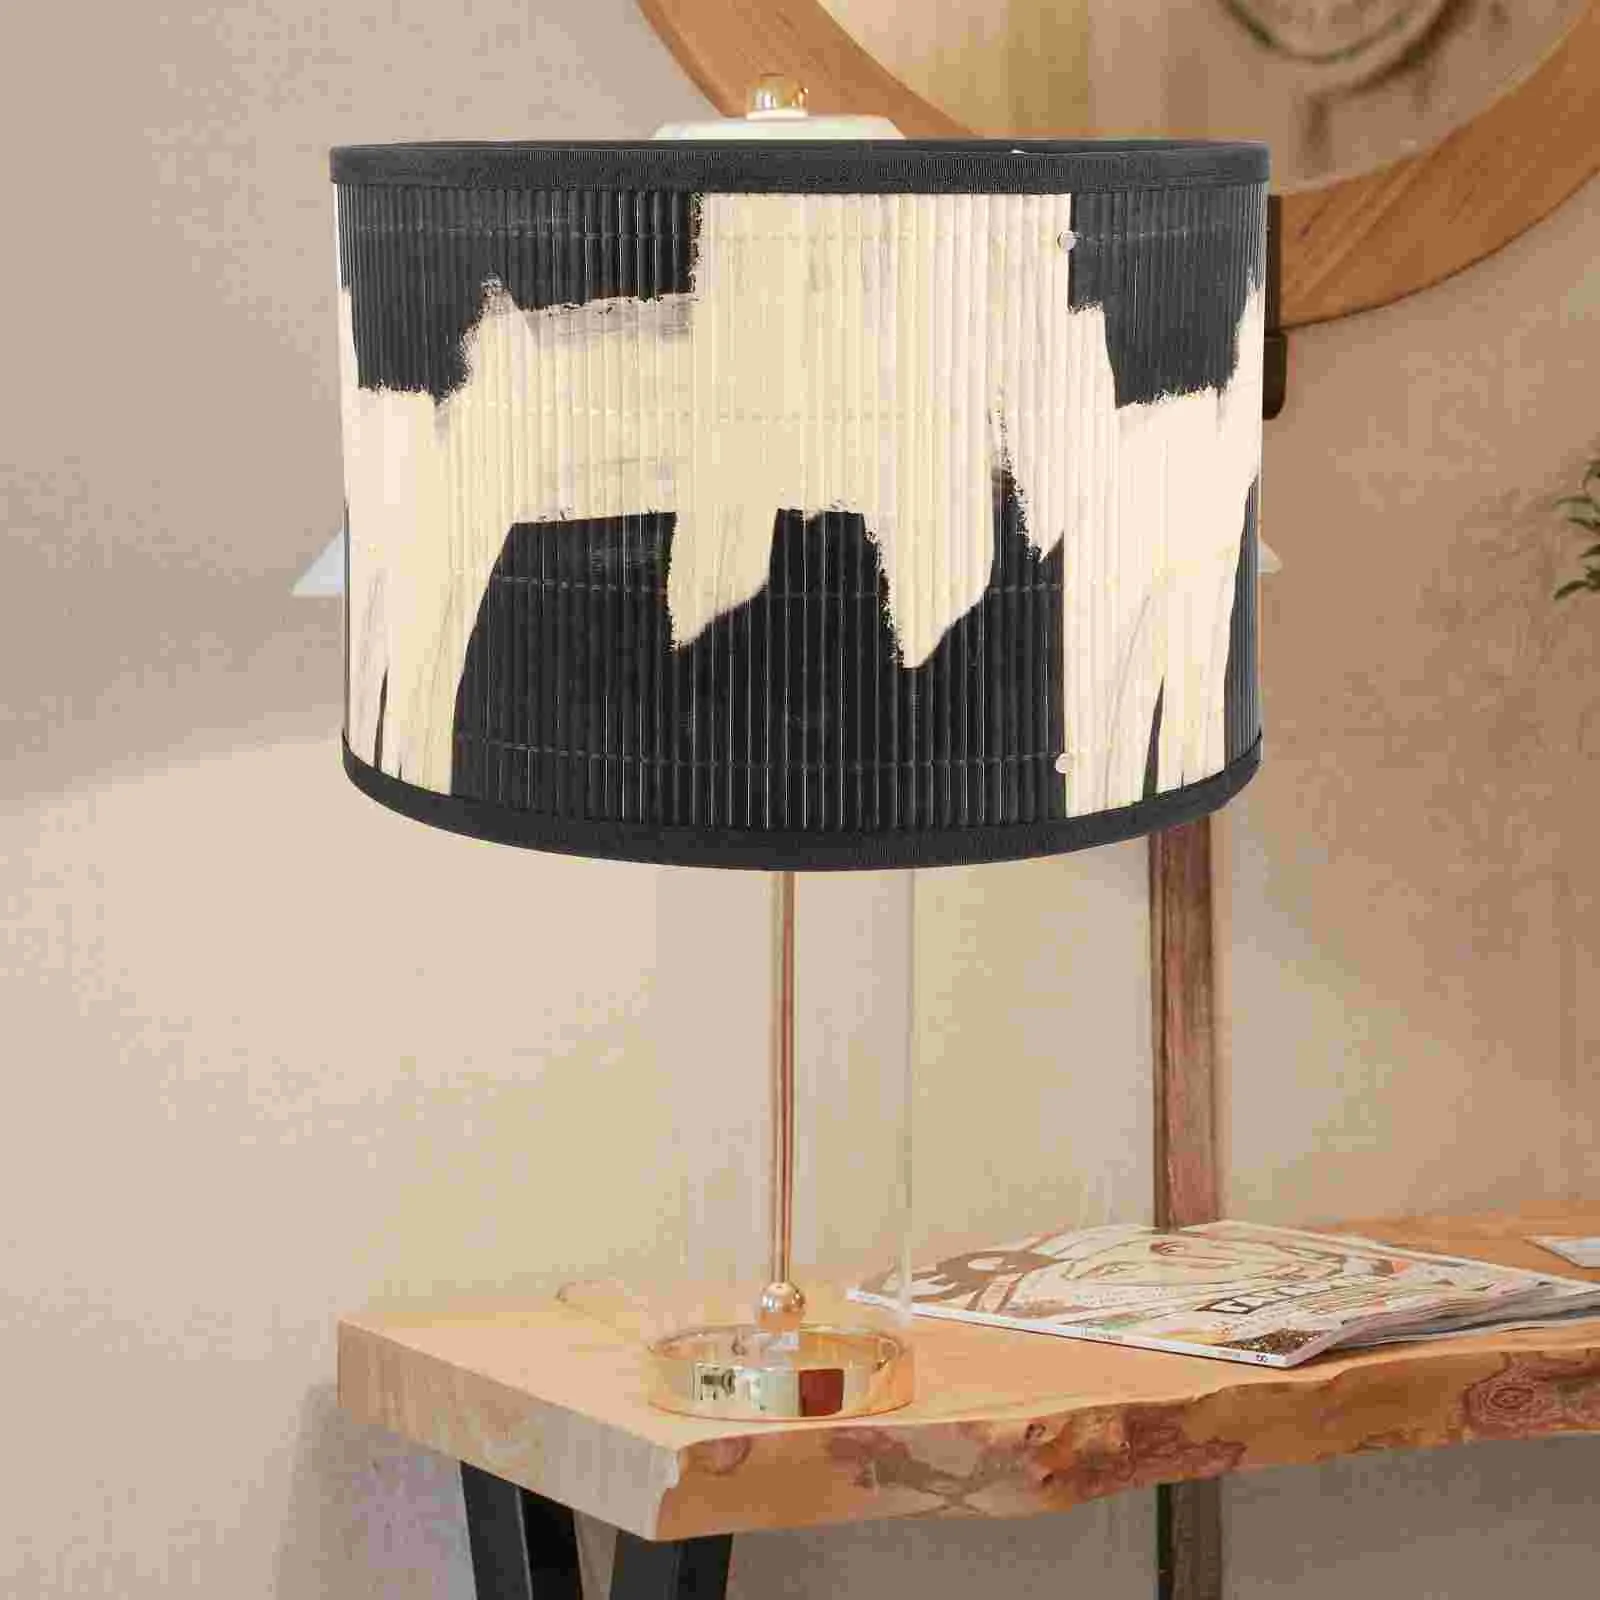 Декоративная лампа в народном стиле в стиле ретро с абстрактным принтом, абажур для росписи бамбуковых изделий